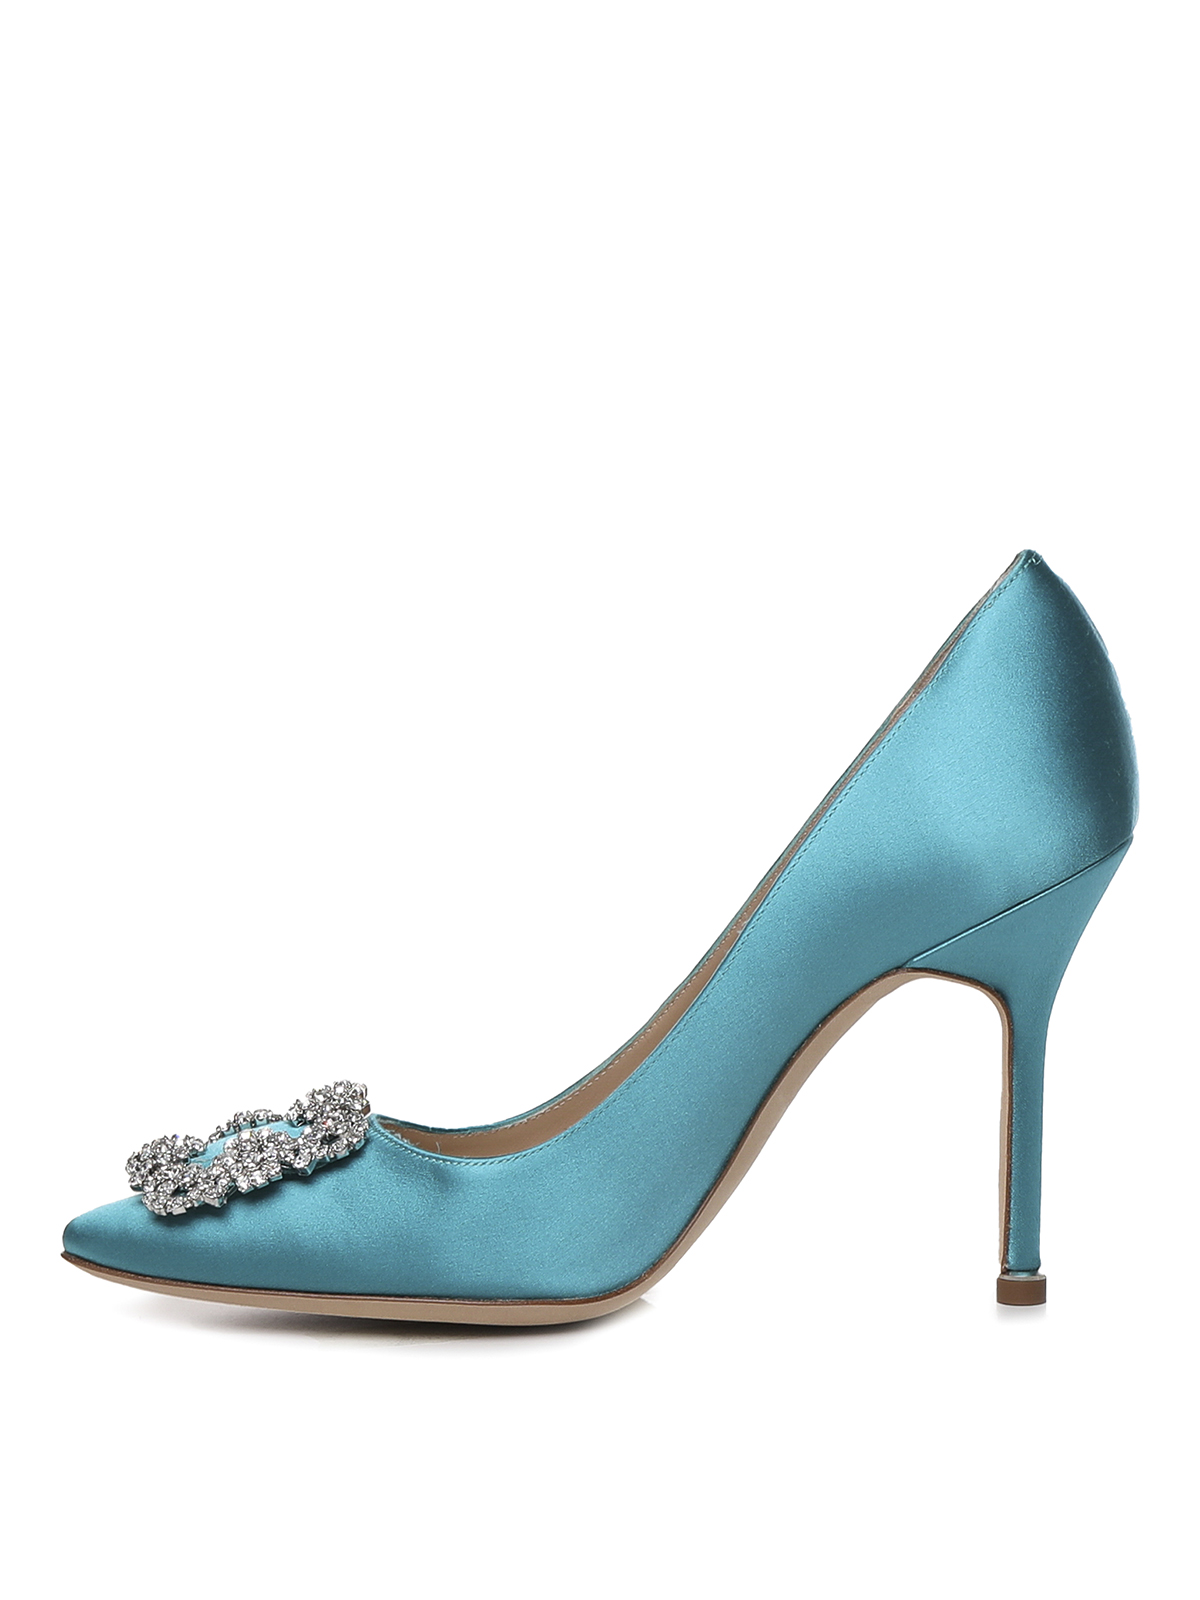 Manolo Blahnik Zapatos De Salón - Azul